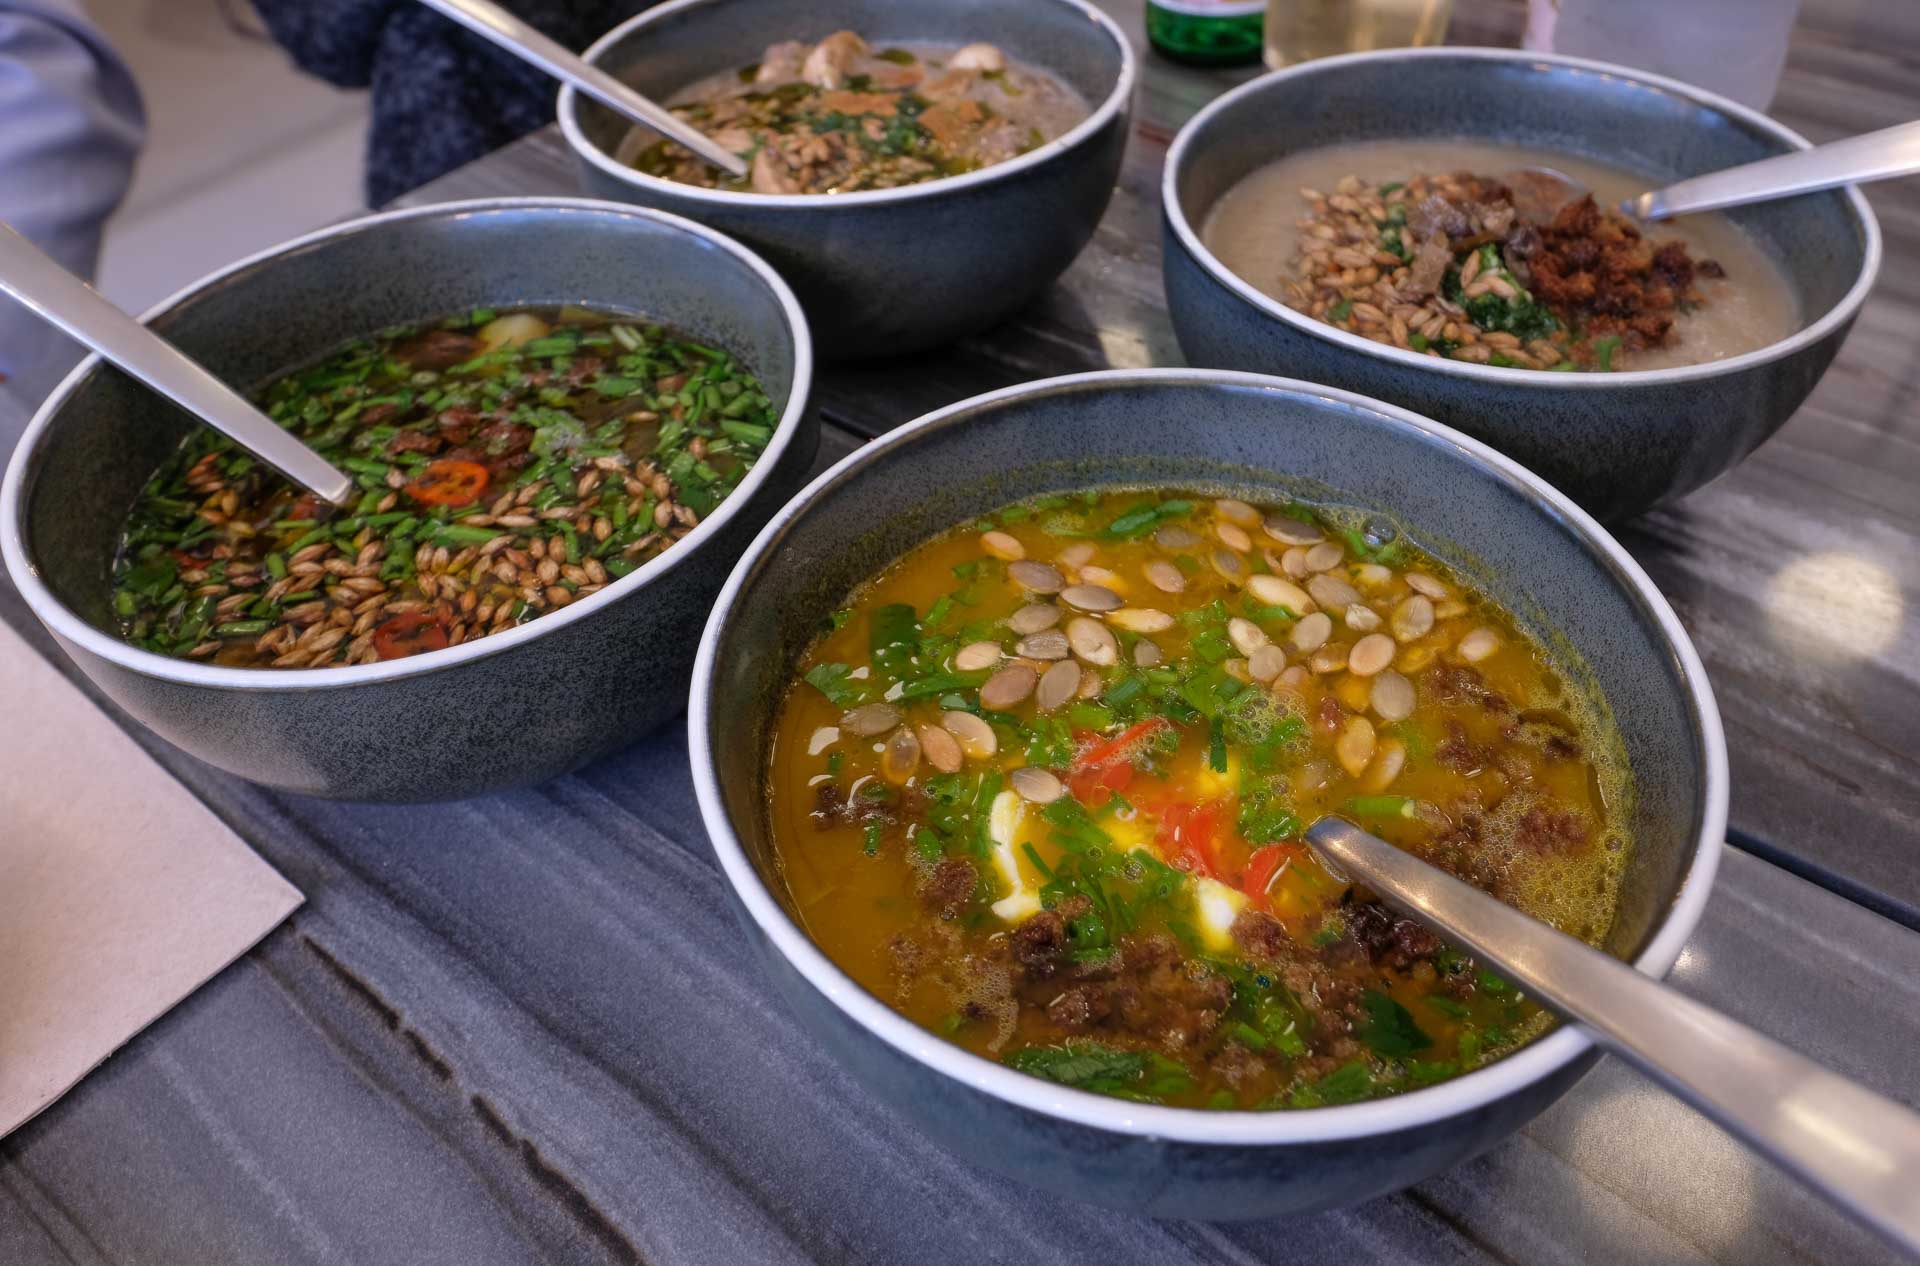 Her ser man fire forskellige supper hos Soup Nerds i Borggade